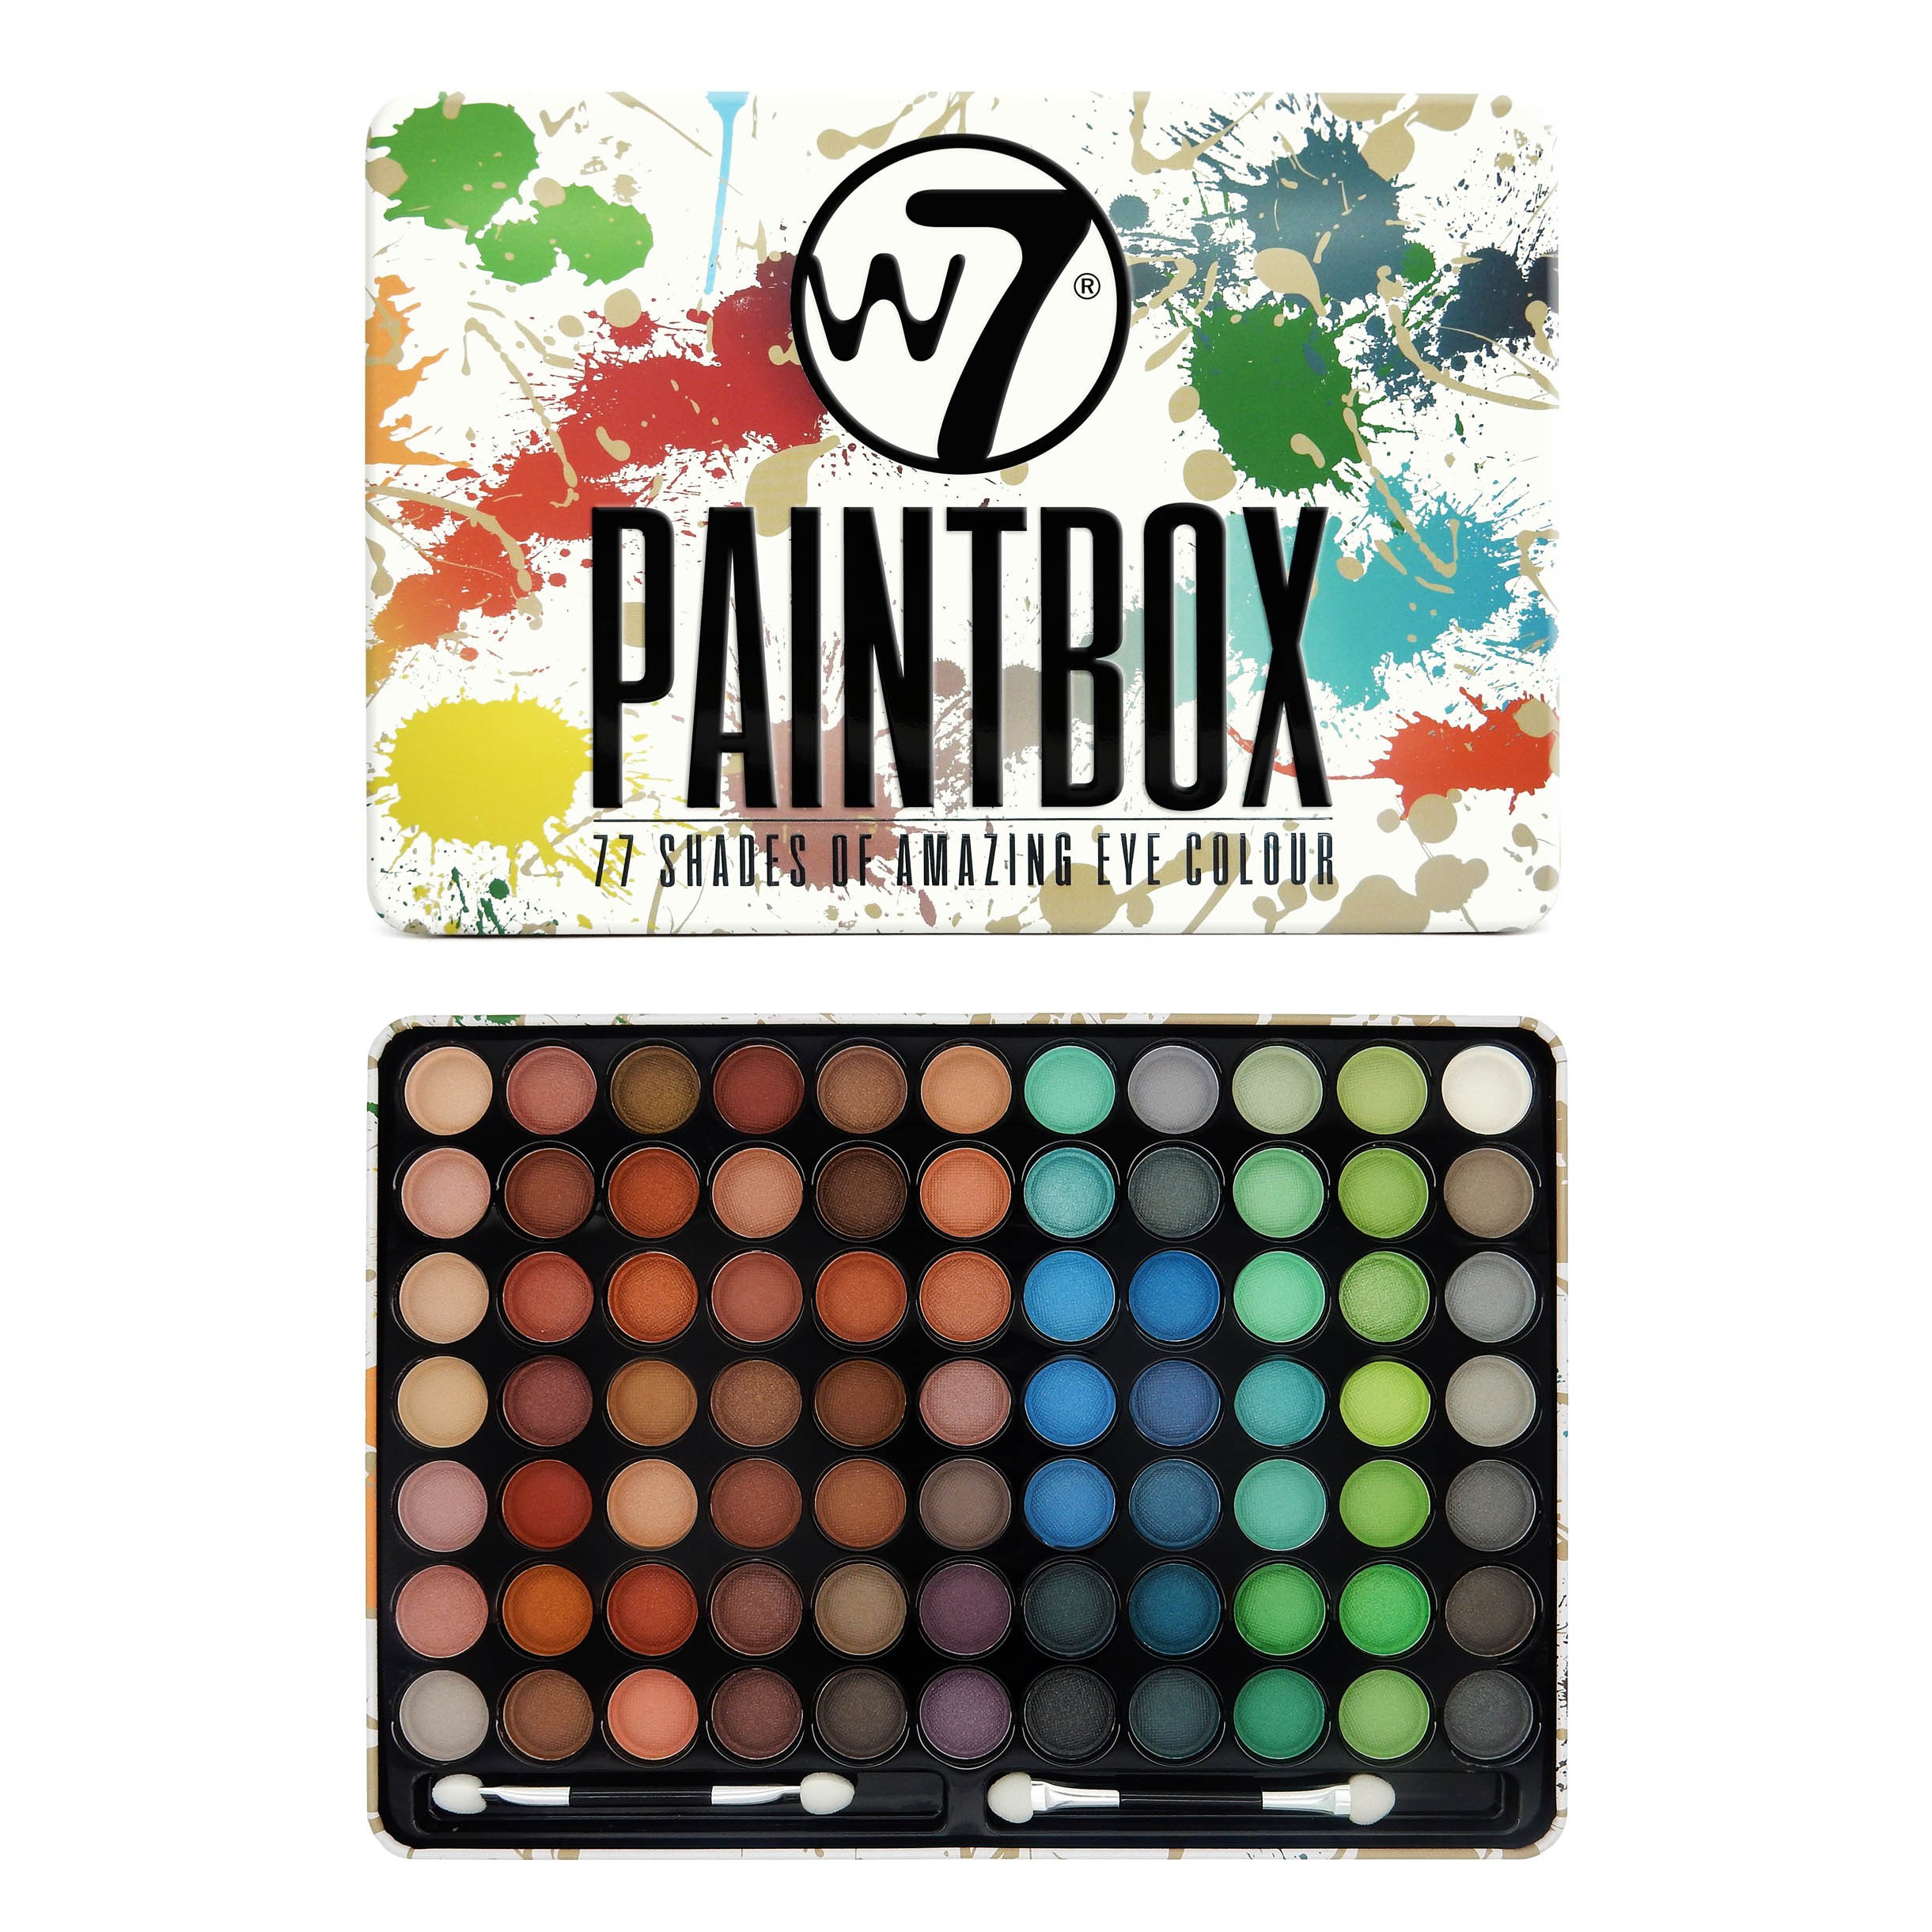 Palette de Fards à Paupières - Paintbox - 77 Shades Of Amazing Eye Colours